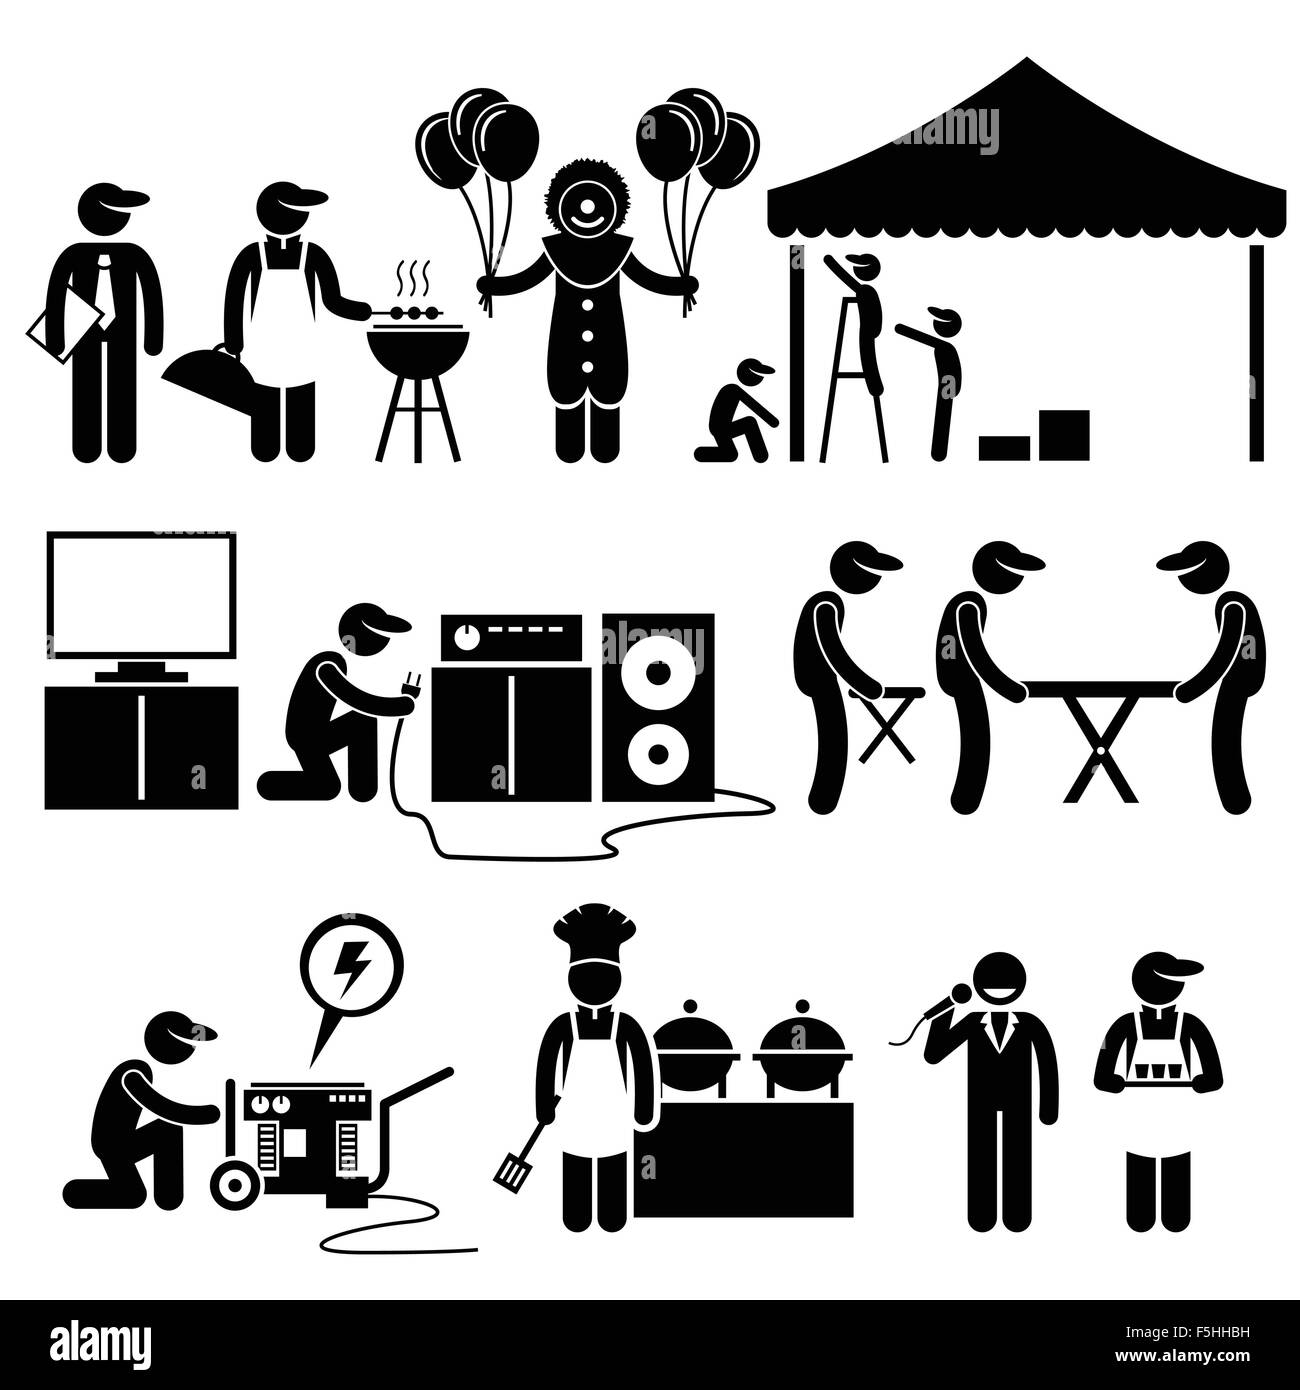 Feier Party Festival Veranstaltung Dienstleistungen Strichmännchen Piktogramm Icons Stock Vektor